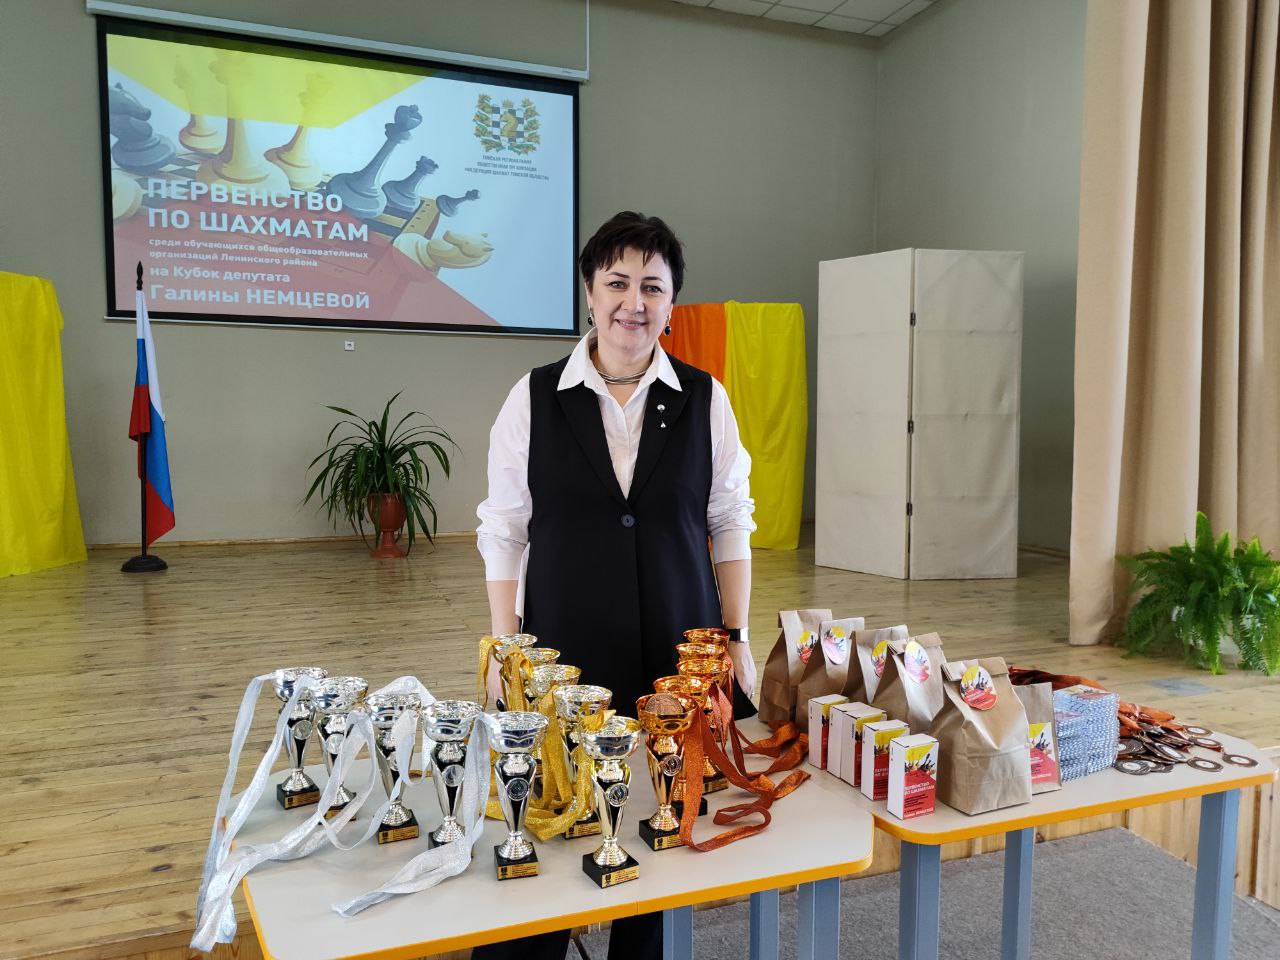 Чемпионат россии по шахматам среди детей